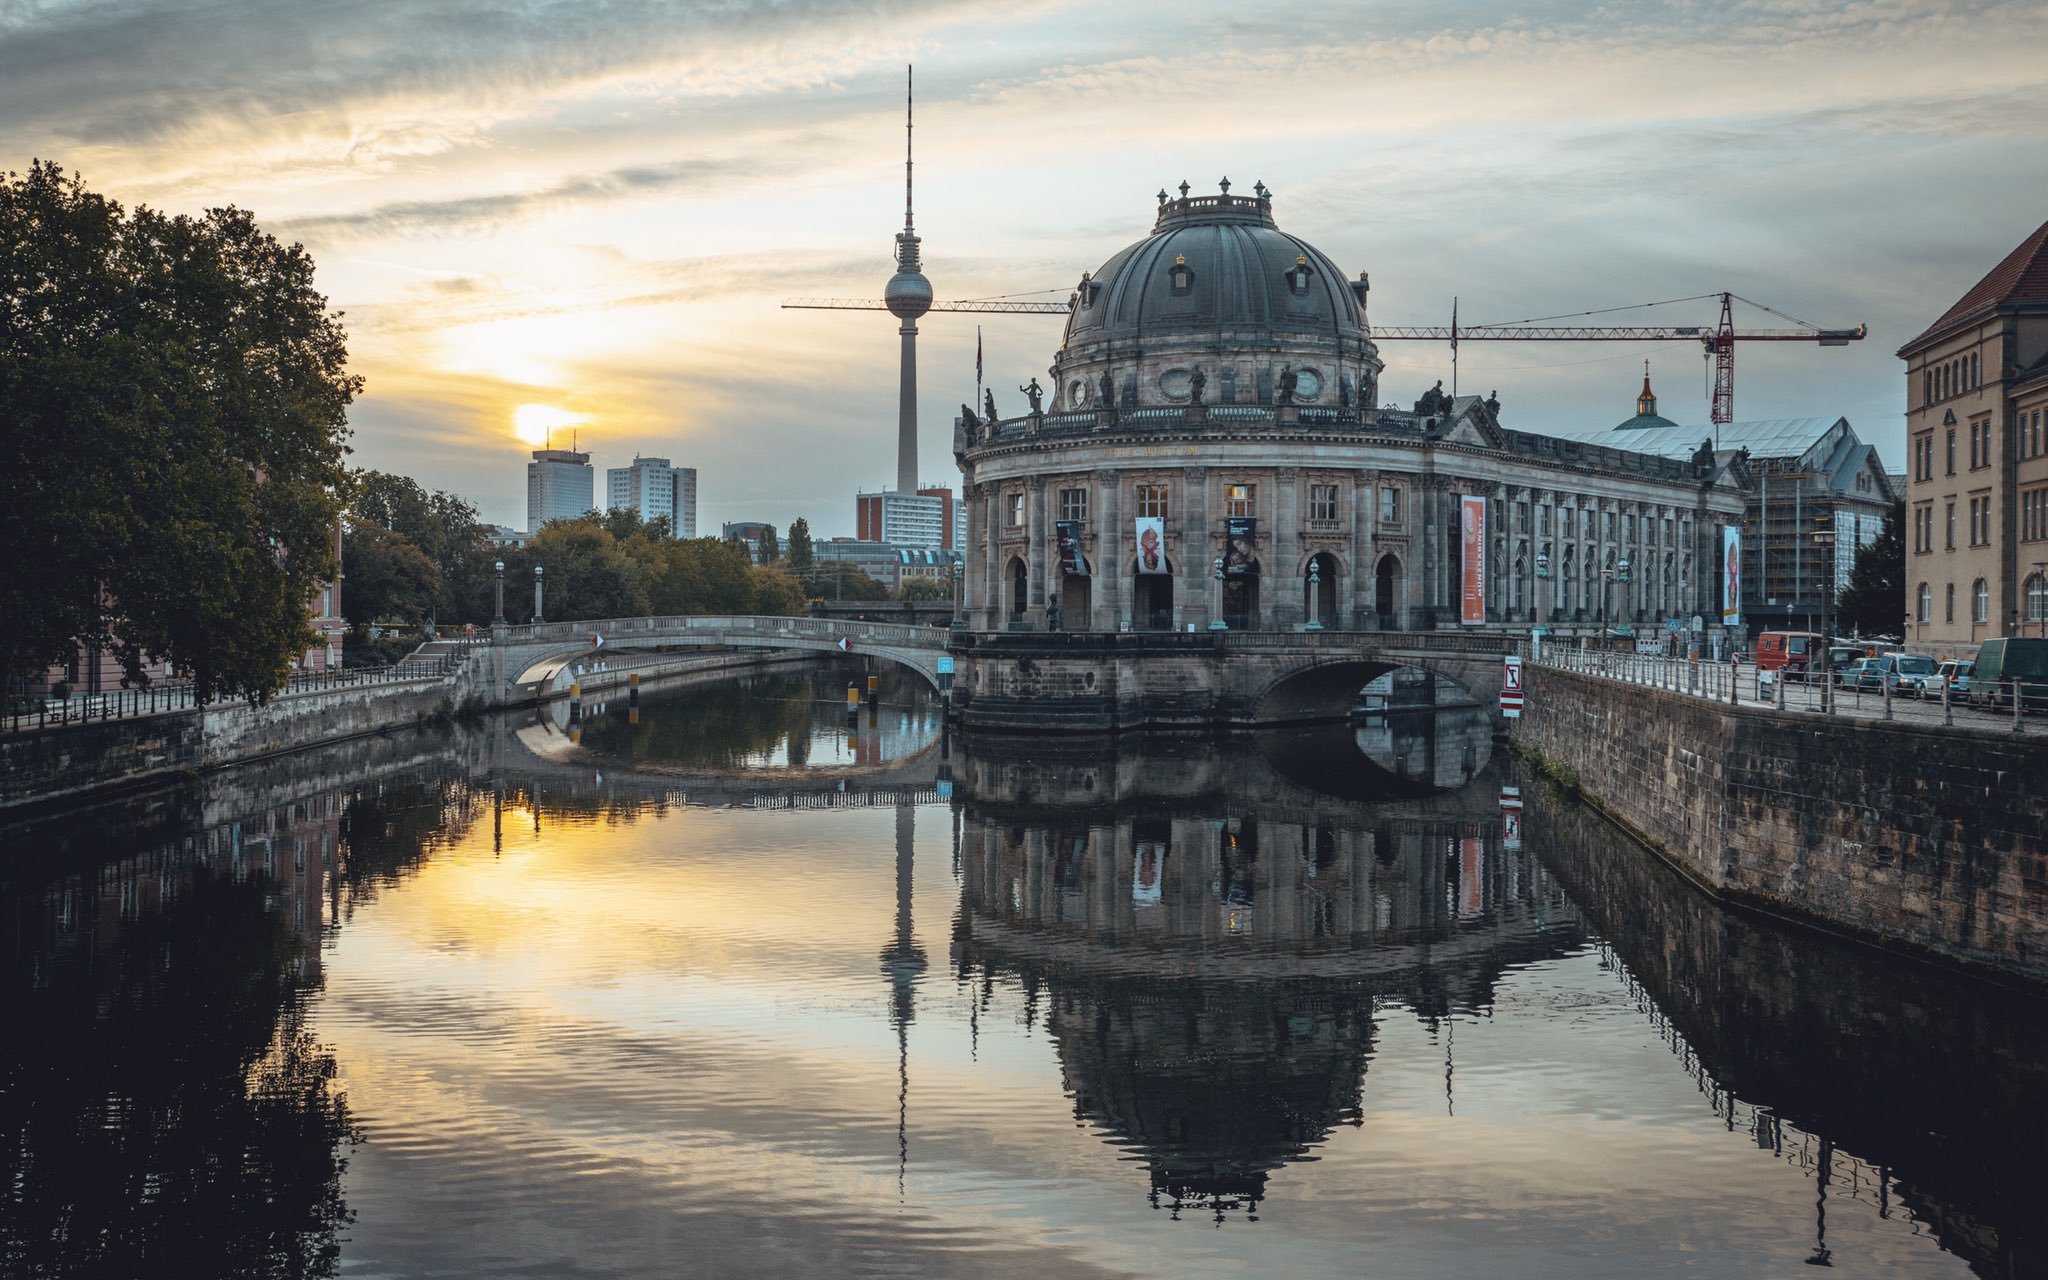 Germania aprobă limite pentru încălzirea clădirilor publice şi interzice panourile publicitare iluminate, cu scopul de economisi energie şi de a combate creşterea costurilor energetice